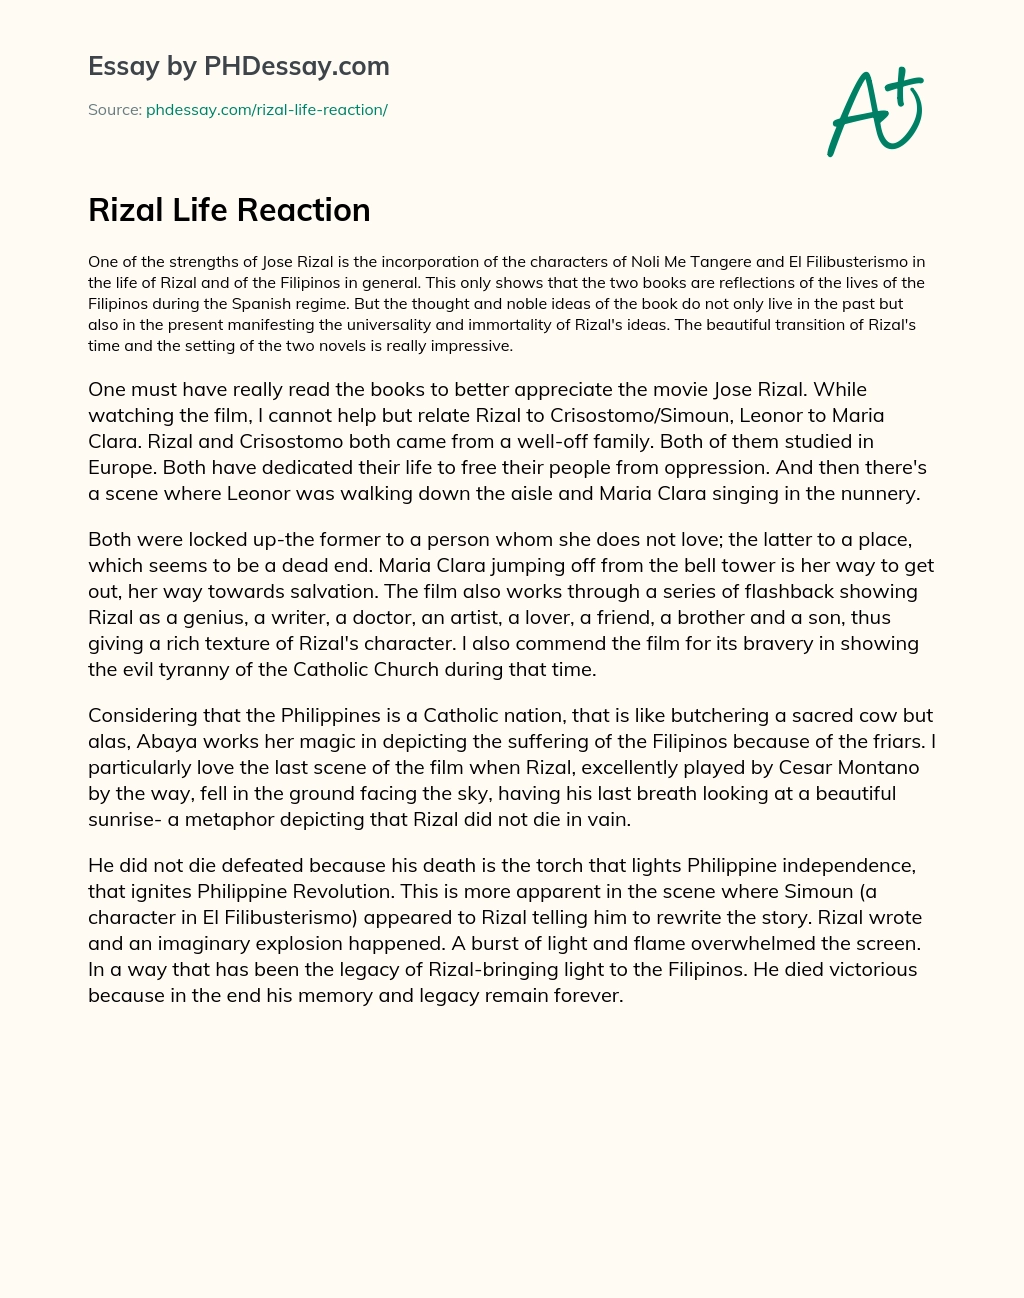 Rizal Life Reaction essay